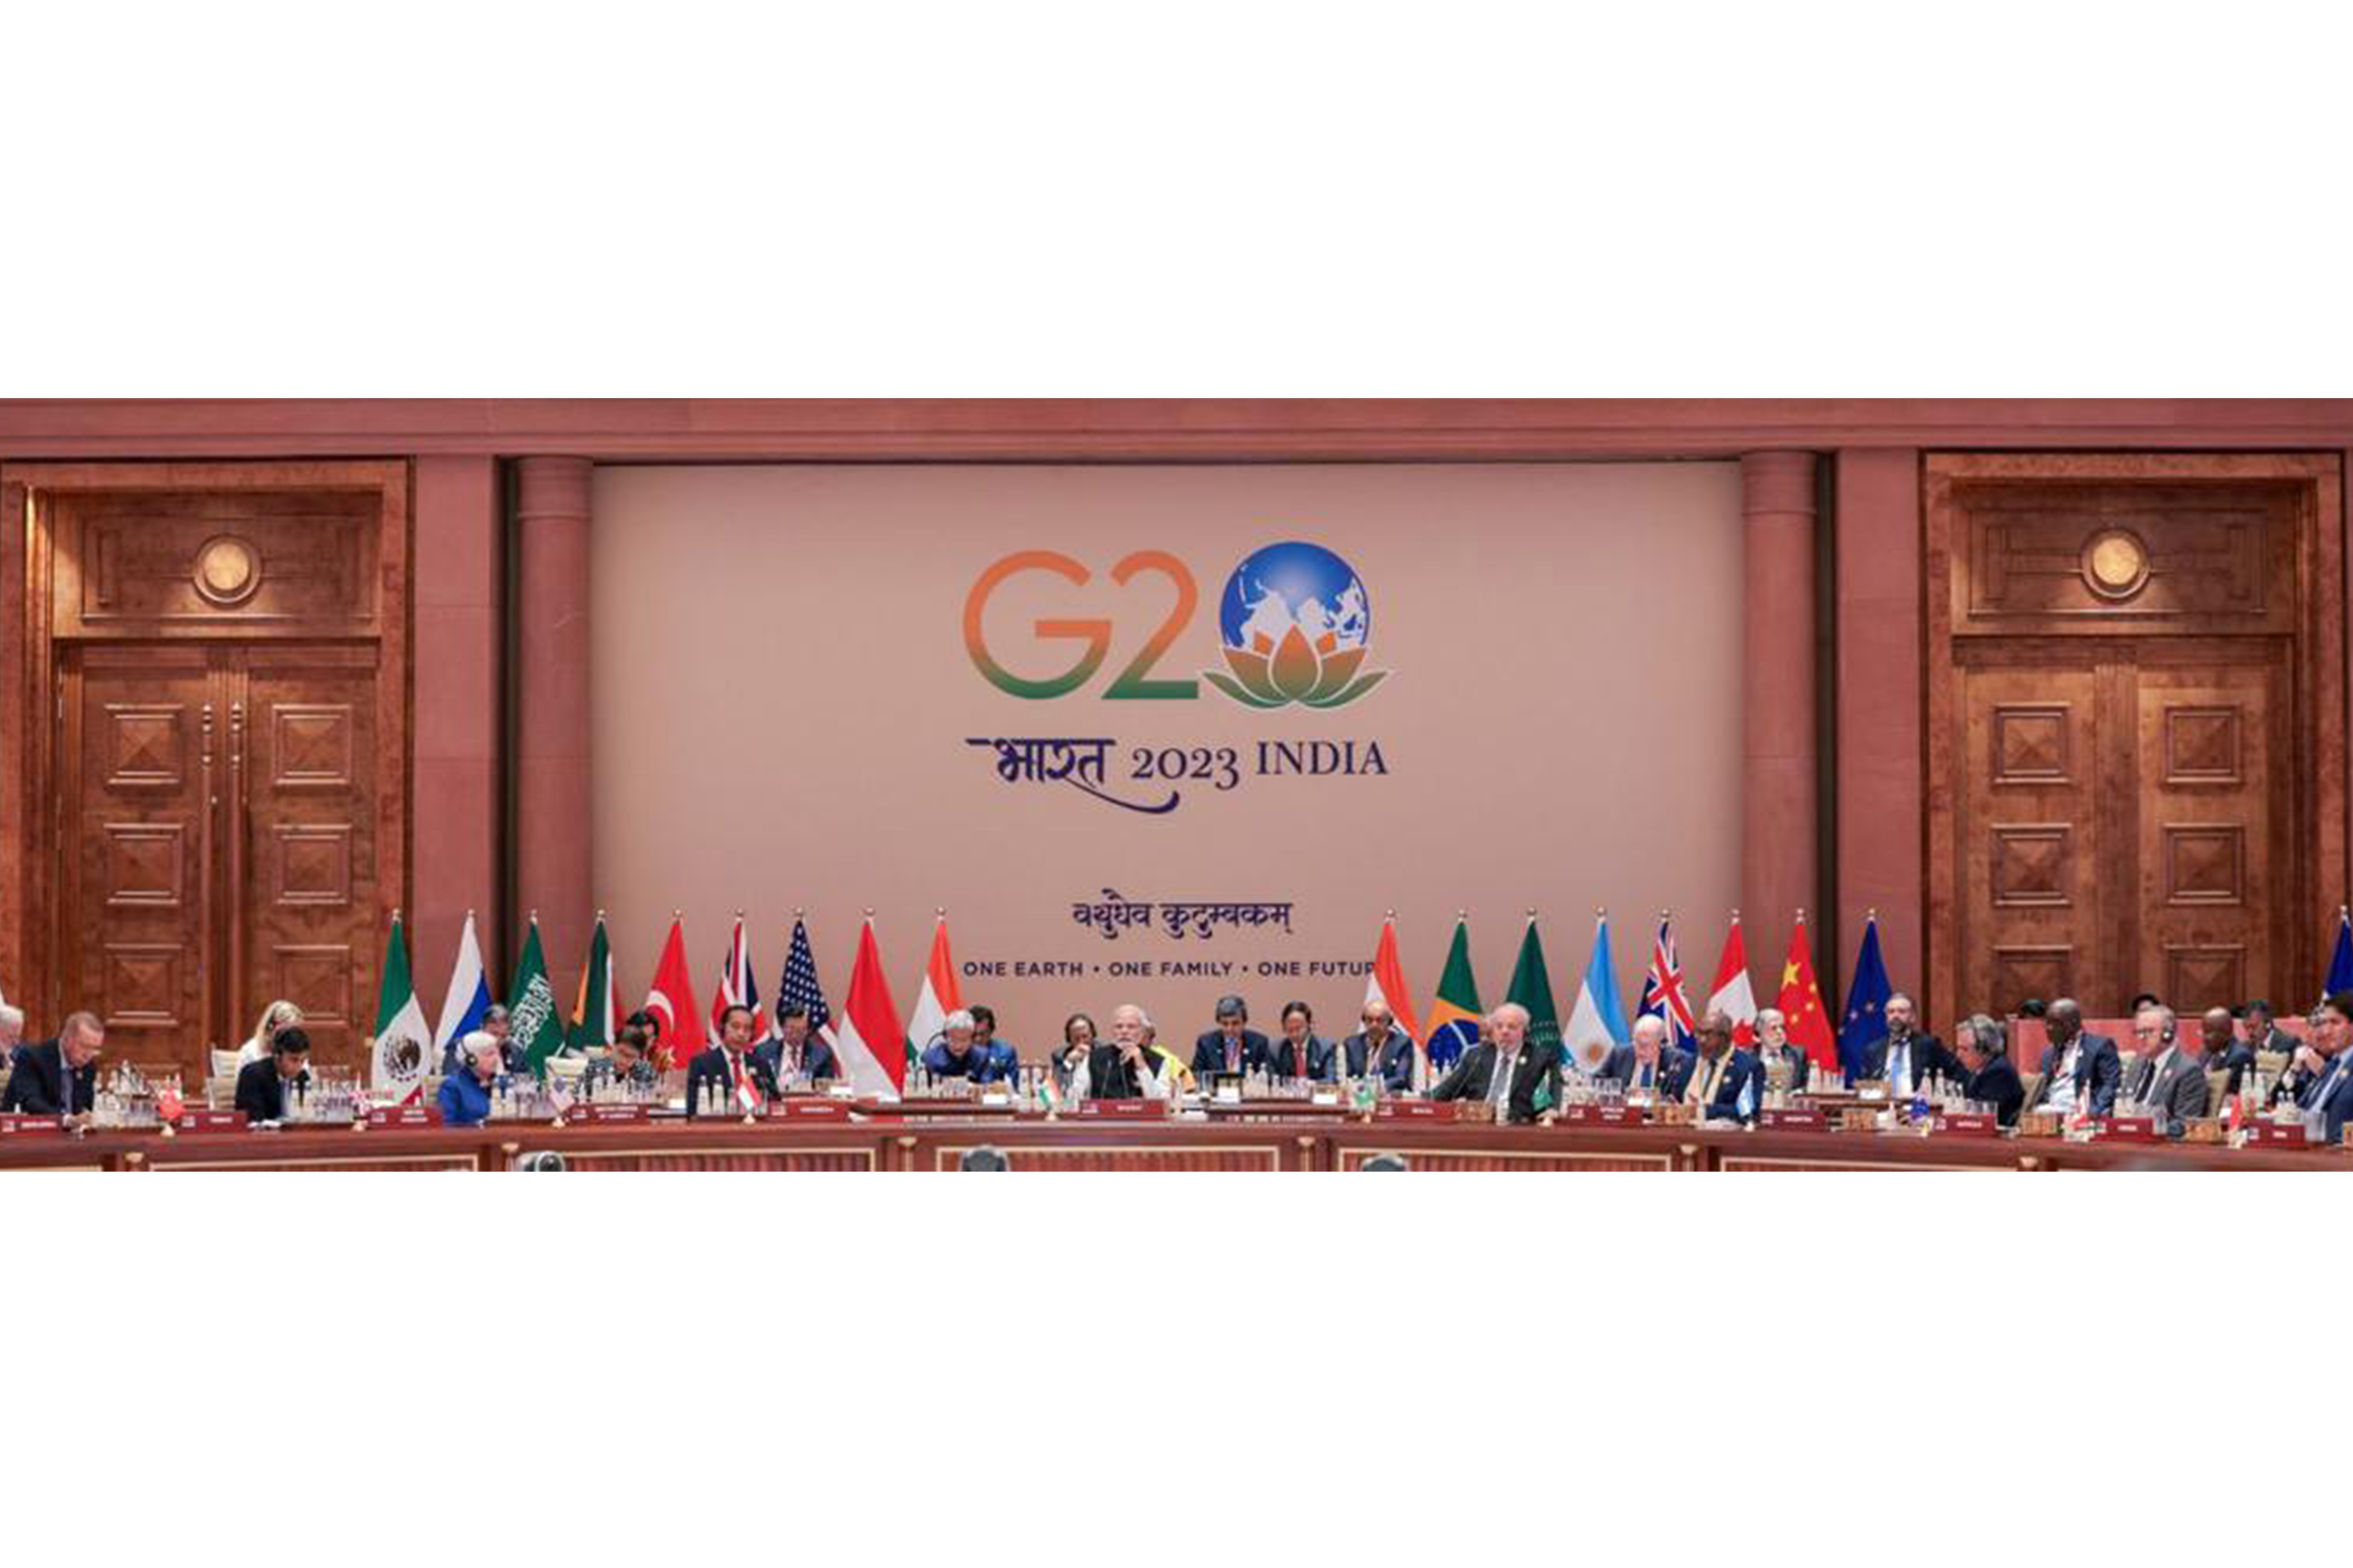 G20 - 'Vasudhaiva Kutumbakam'